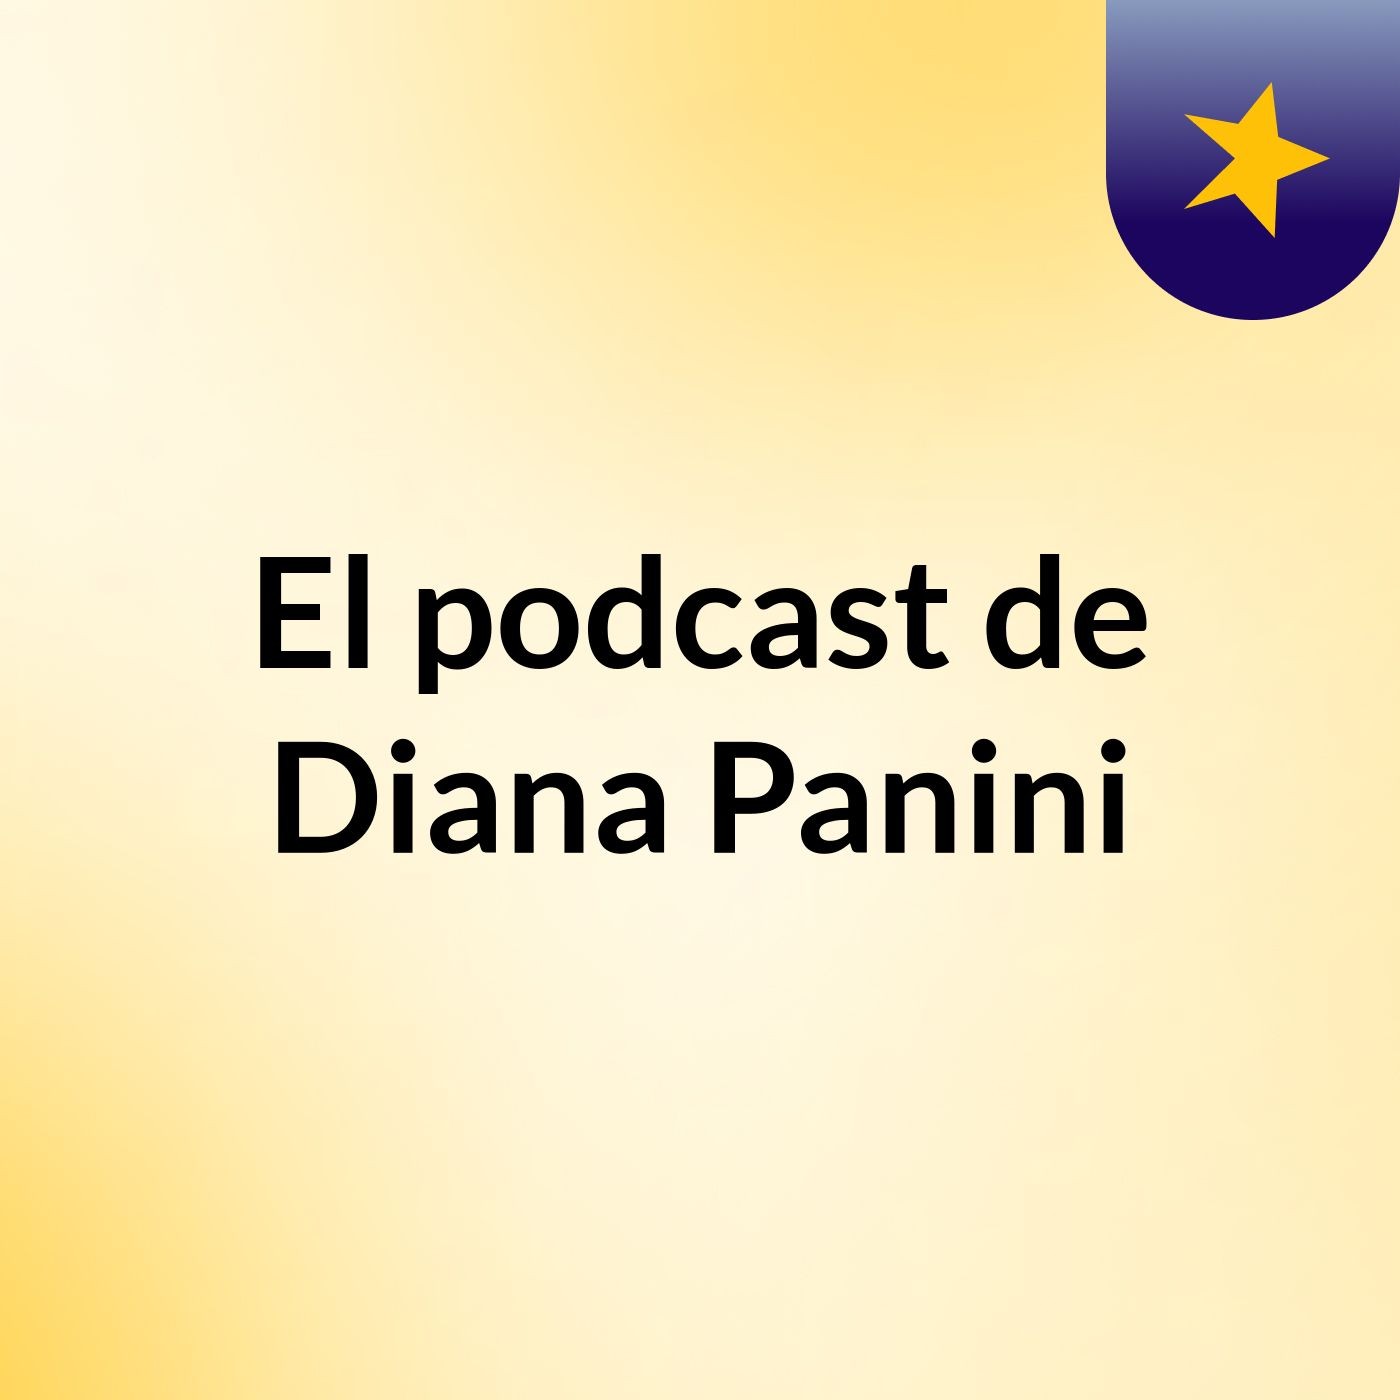 Episodio 2 - El podcast de Diana Panini